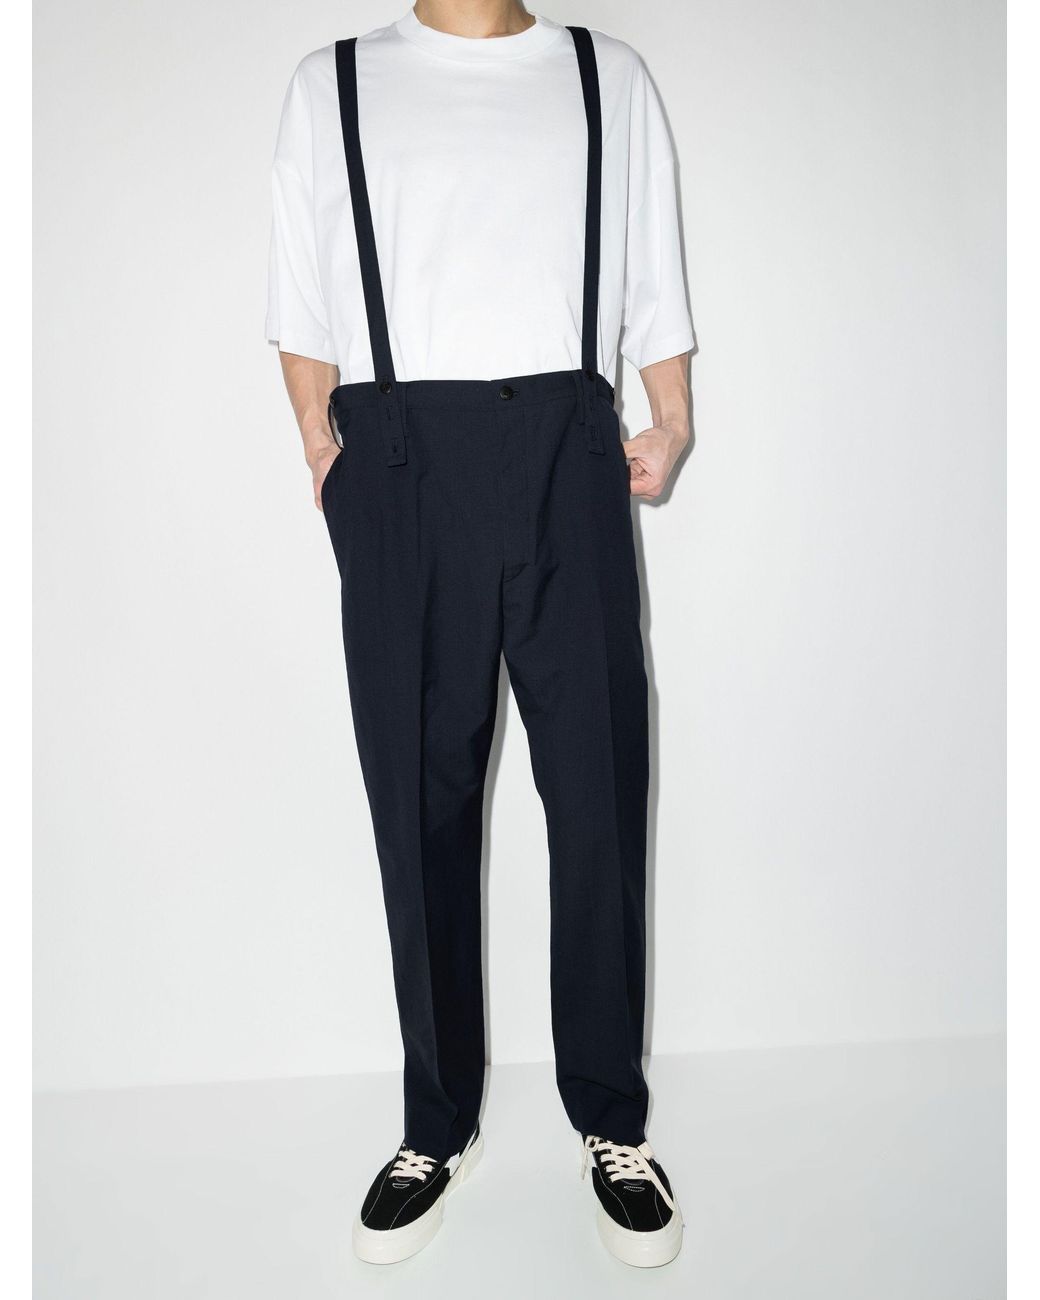 Buy XTM Braces Suspenders for men's and women's plus size pants